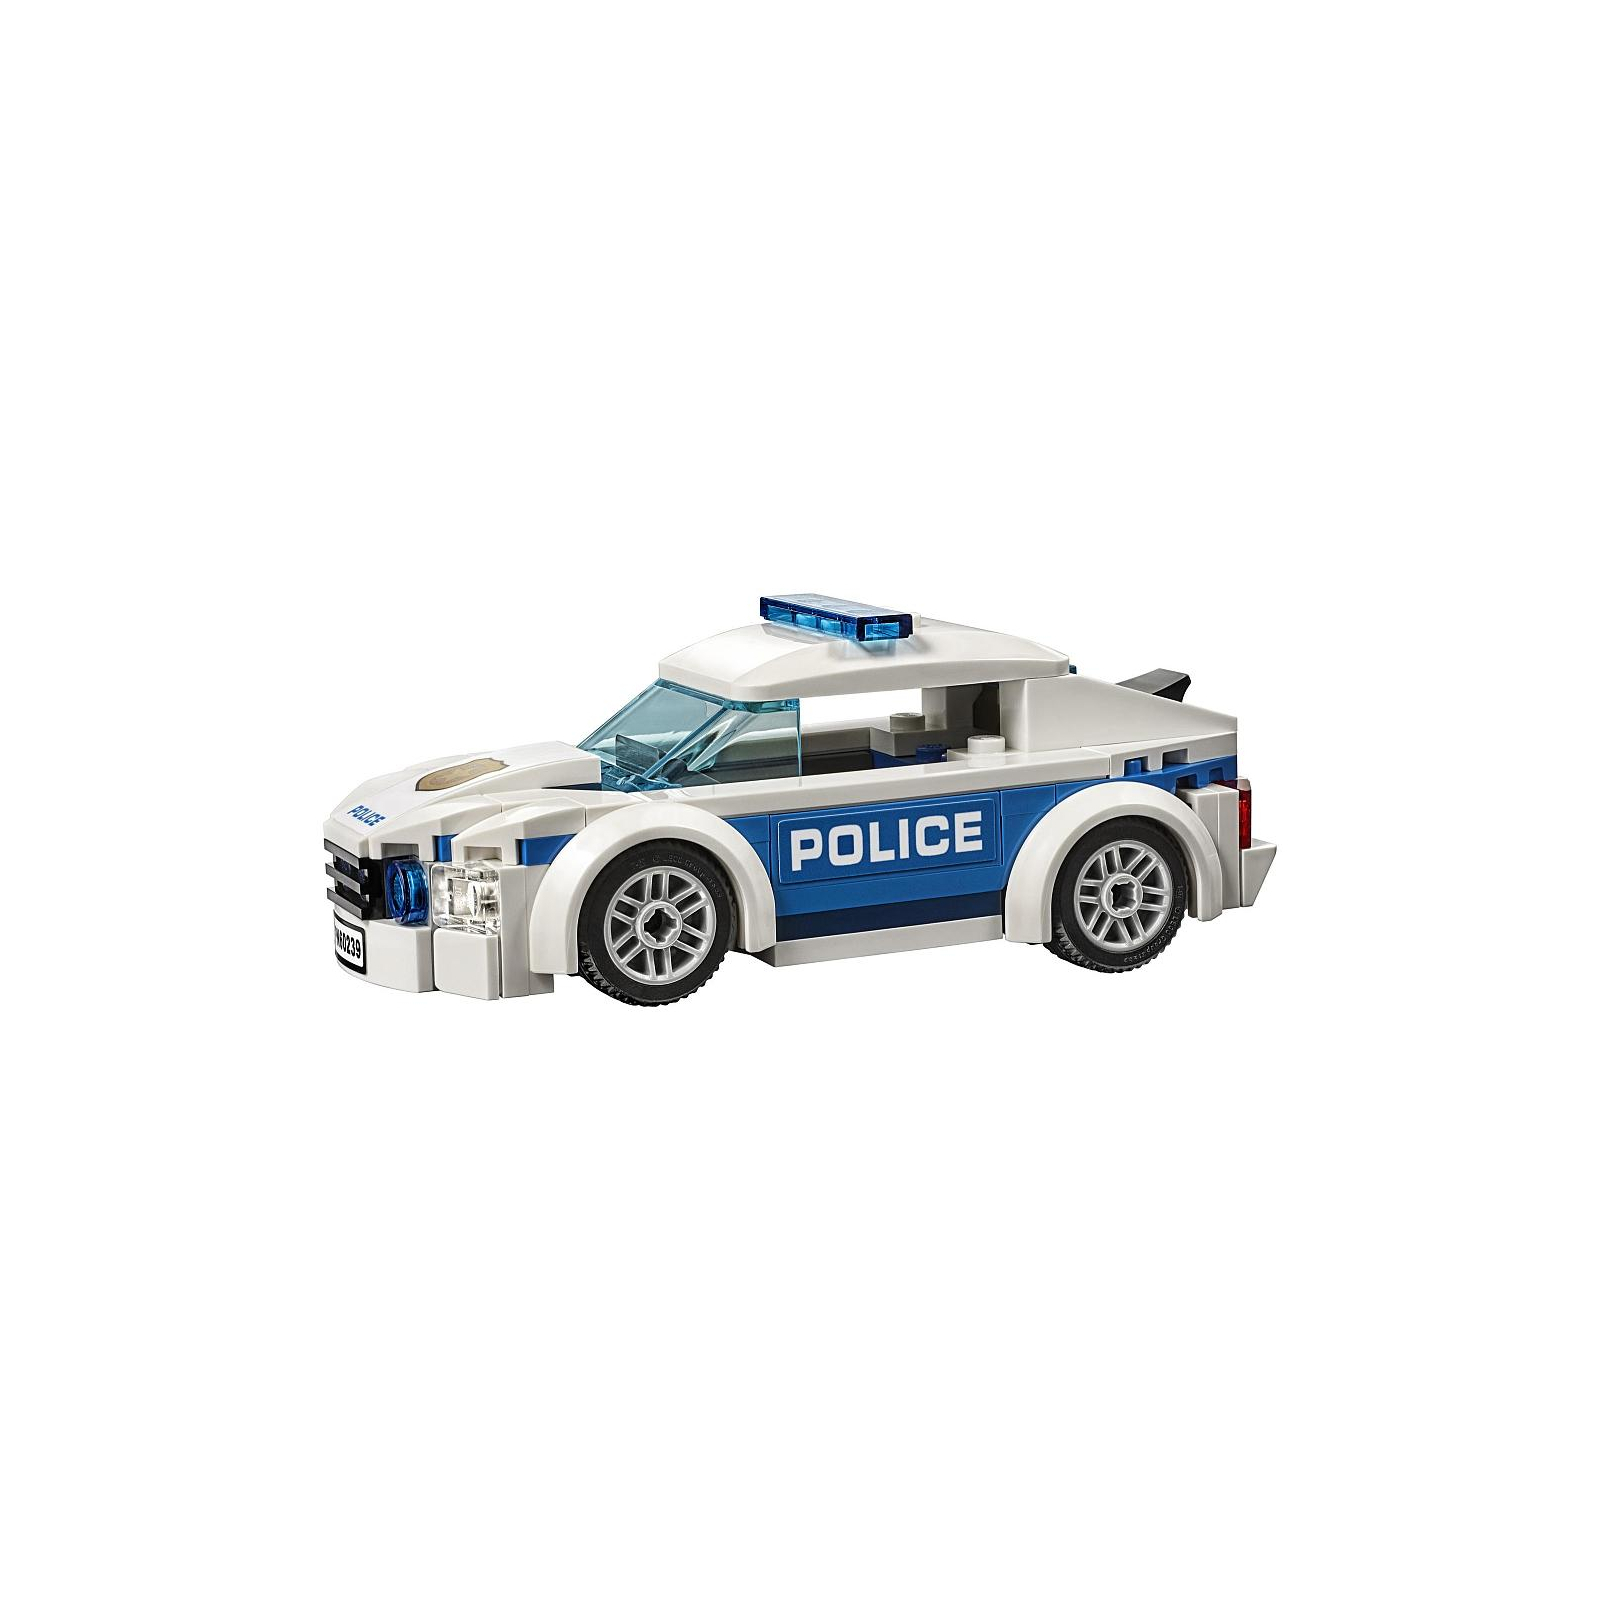 Конструктор LEGO City Автомобиль полицейского патруля 92 детали (60239) изображение 3